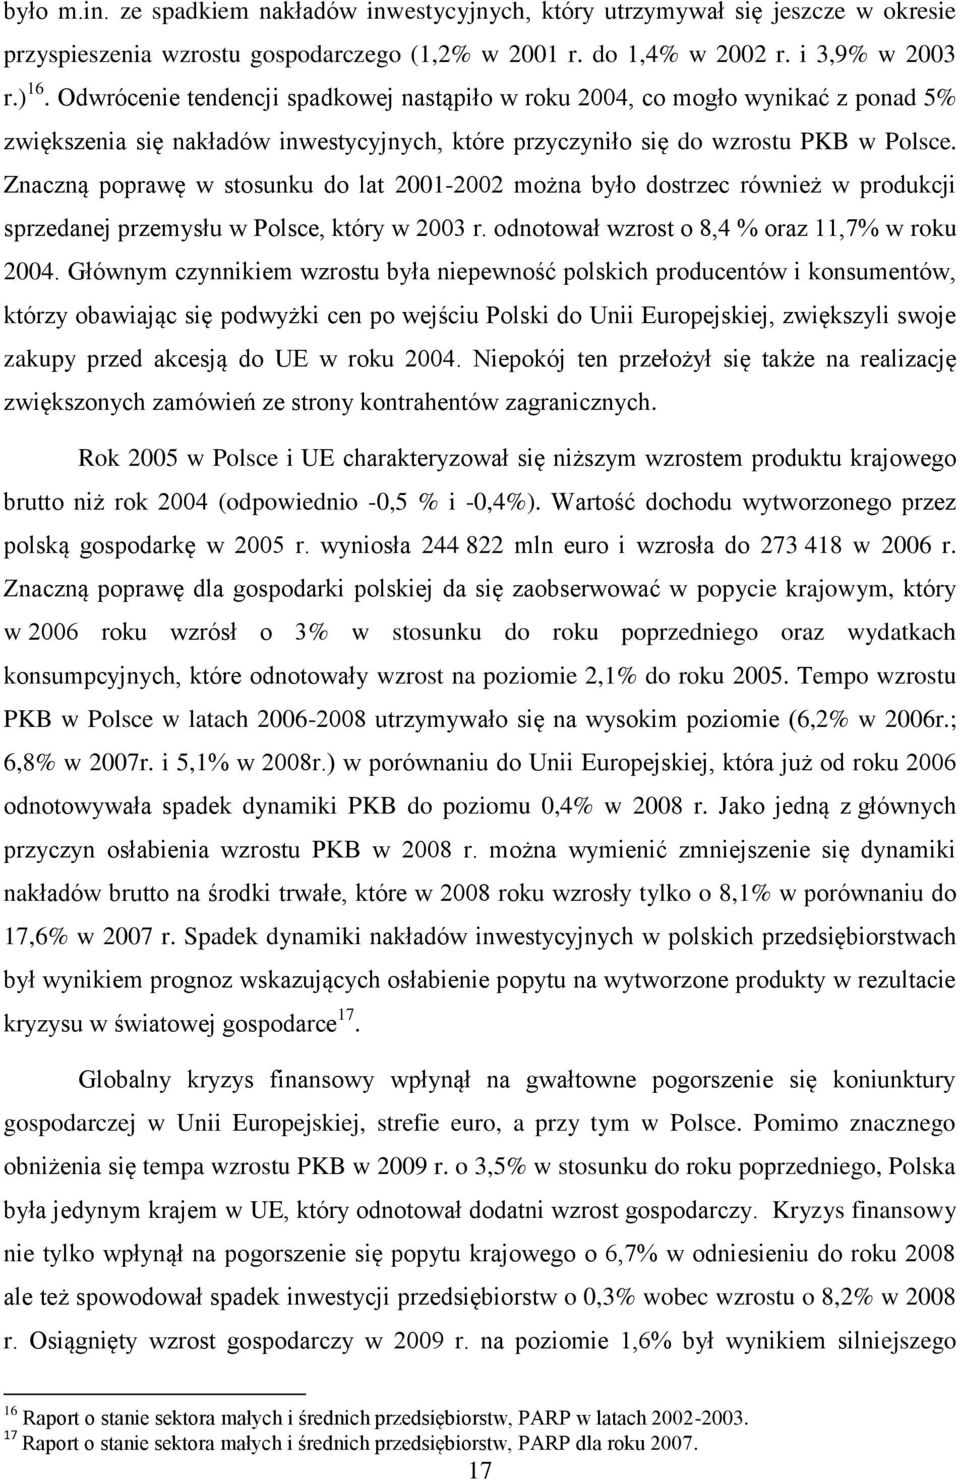 Znaczną poprawę w stosunku do lat 2001-2002 można było dostrzec również w produkcji sprzedanej przemysłu w Polsce, który w 2003 r. odnotował wzrost o 8,4 % oraz 11,7% w roku 2004.